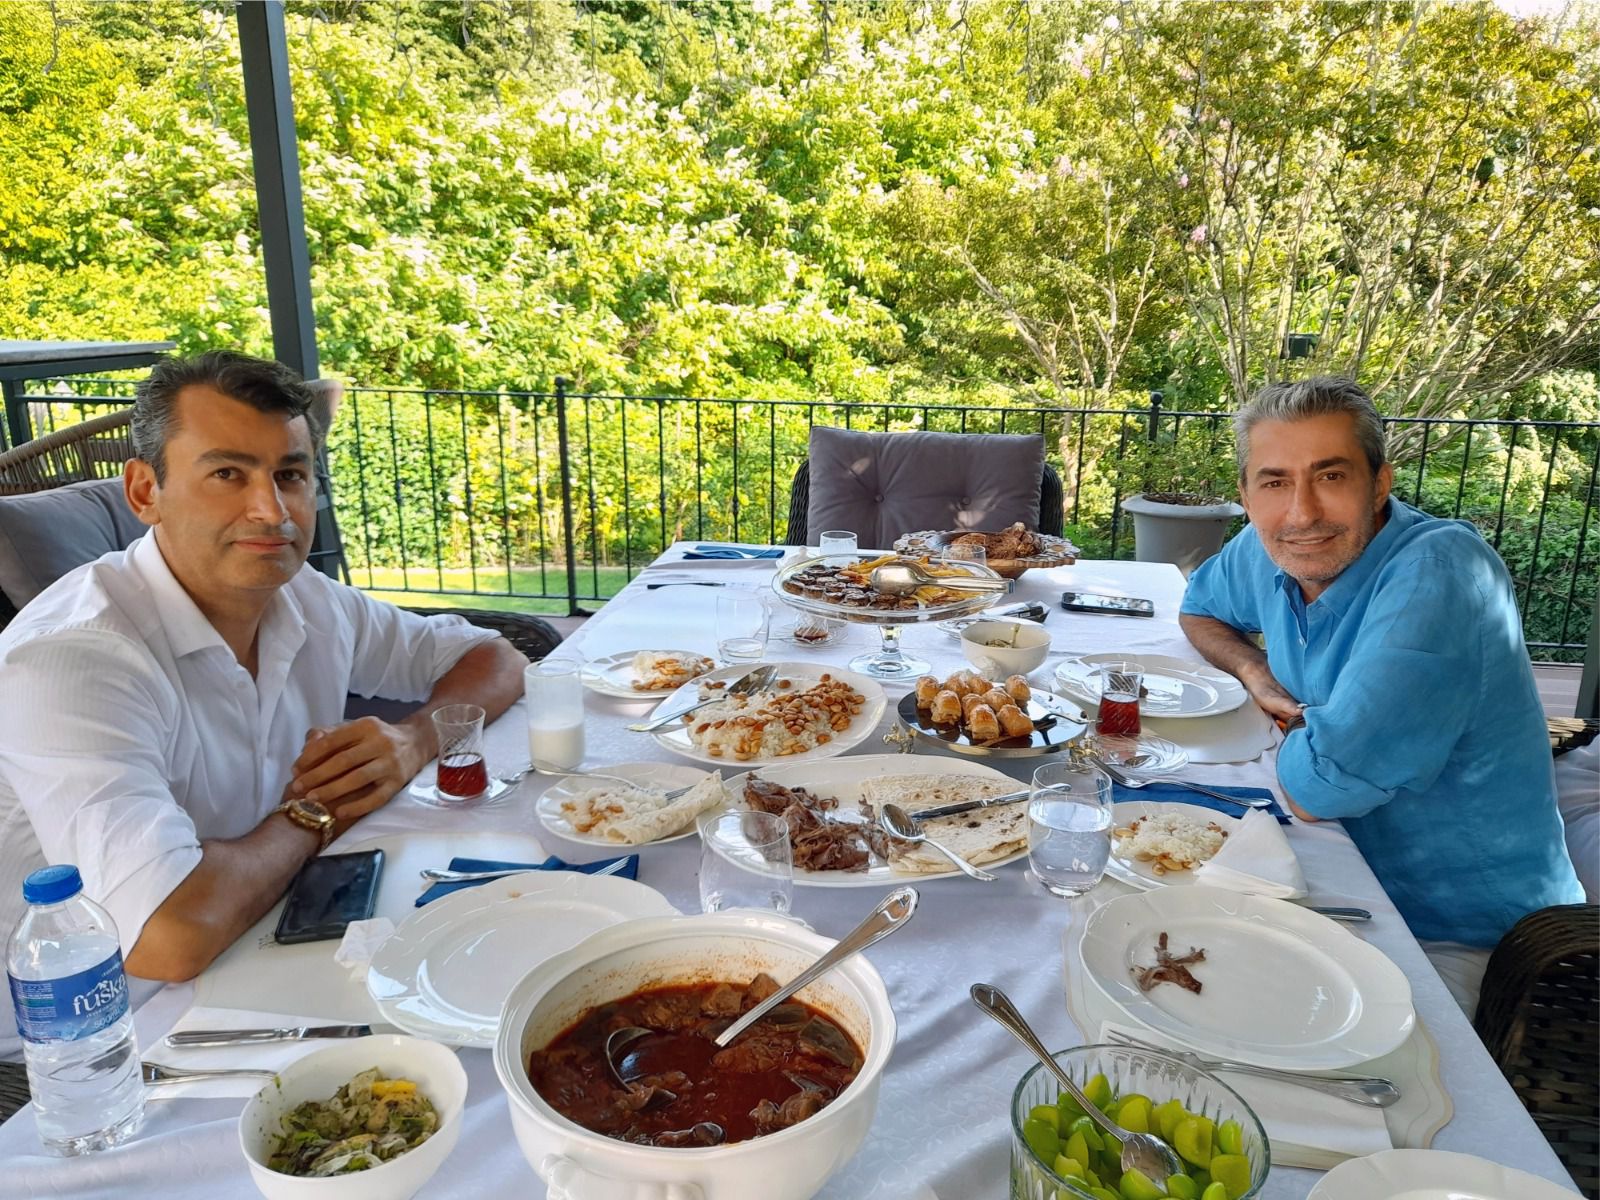 Erkan Petekkaya, yeni sinema filminde hayatını oynadığı ünlü iş insanı İlhan Doğan’ı evinde ağırladı.